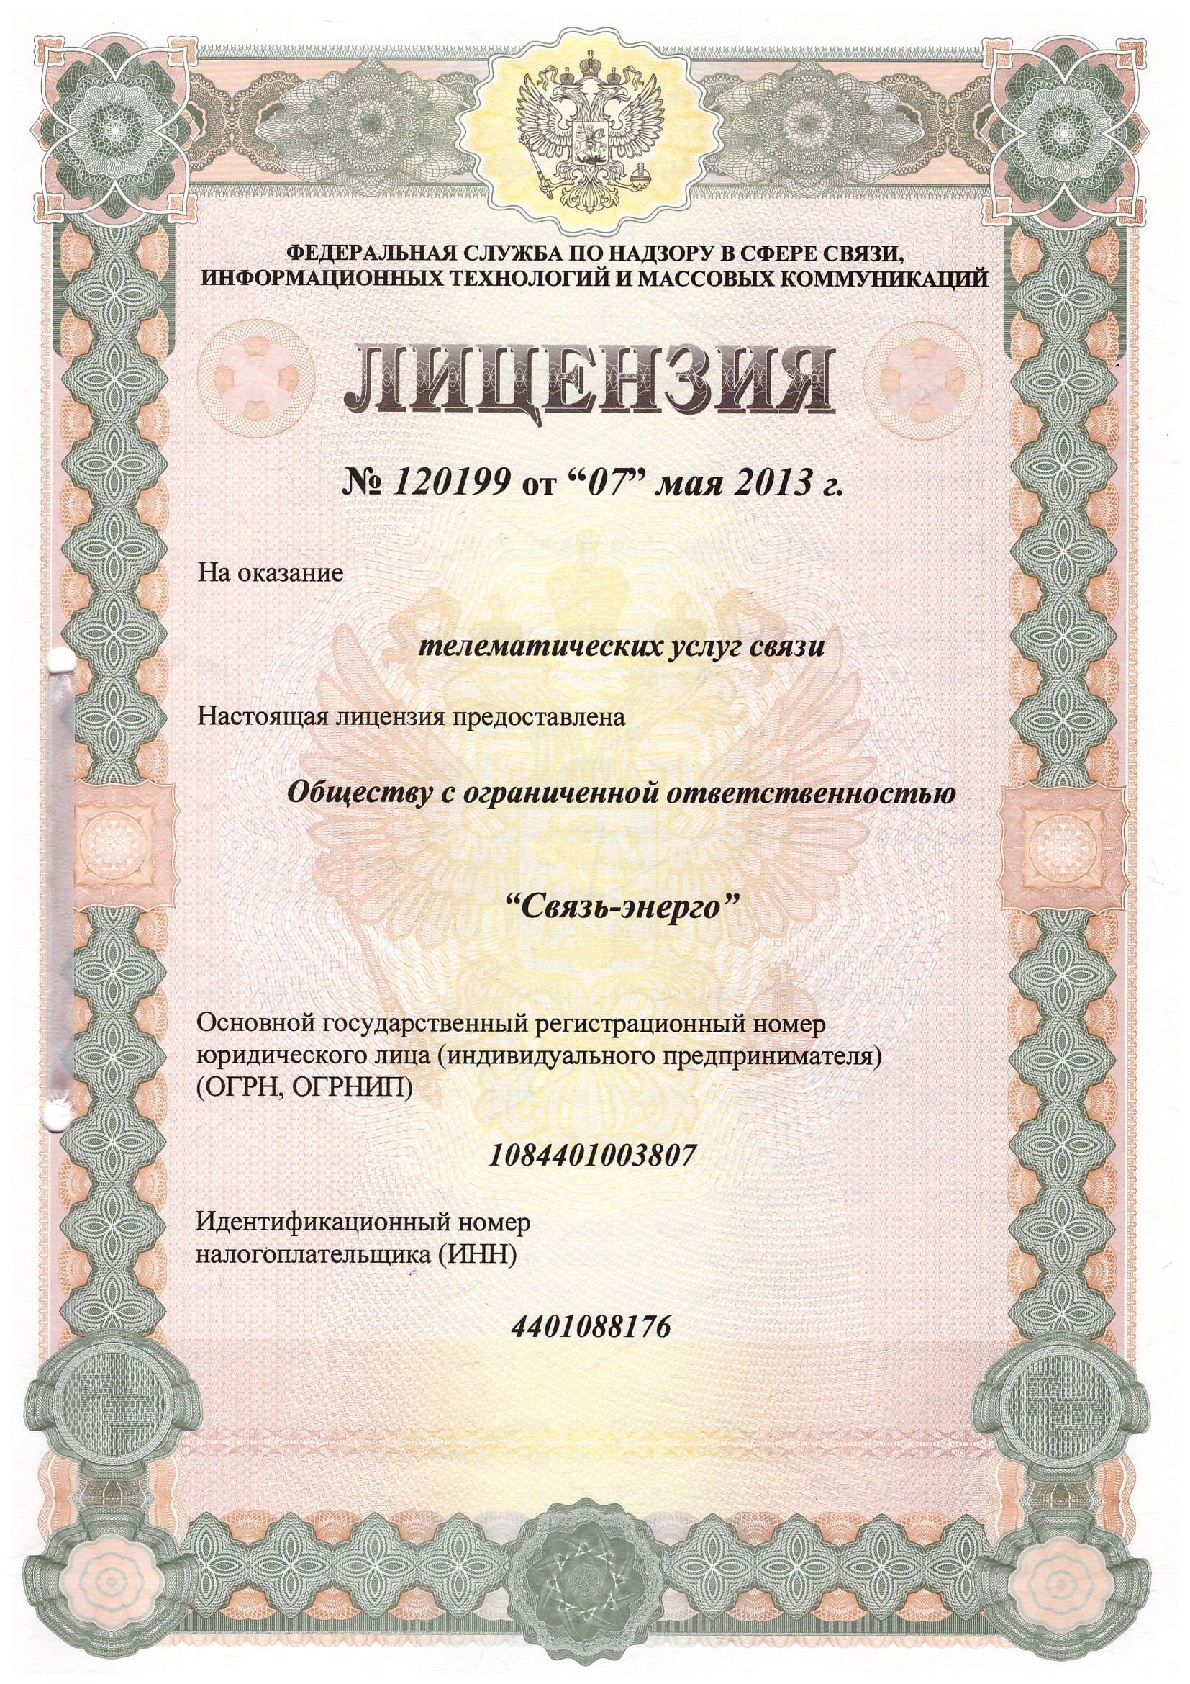 (1) Лицензия № 120199 от 07.05.2013г. на оказание телематических услуг связи;